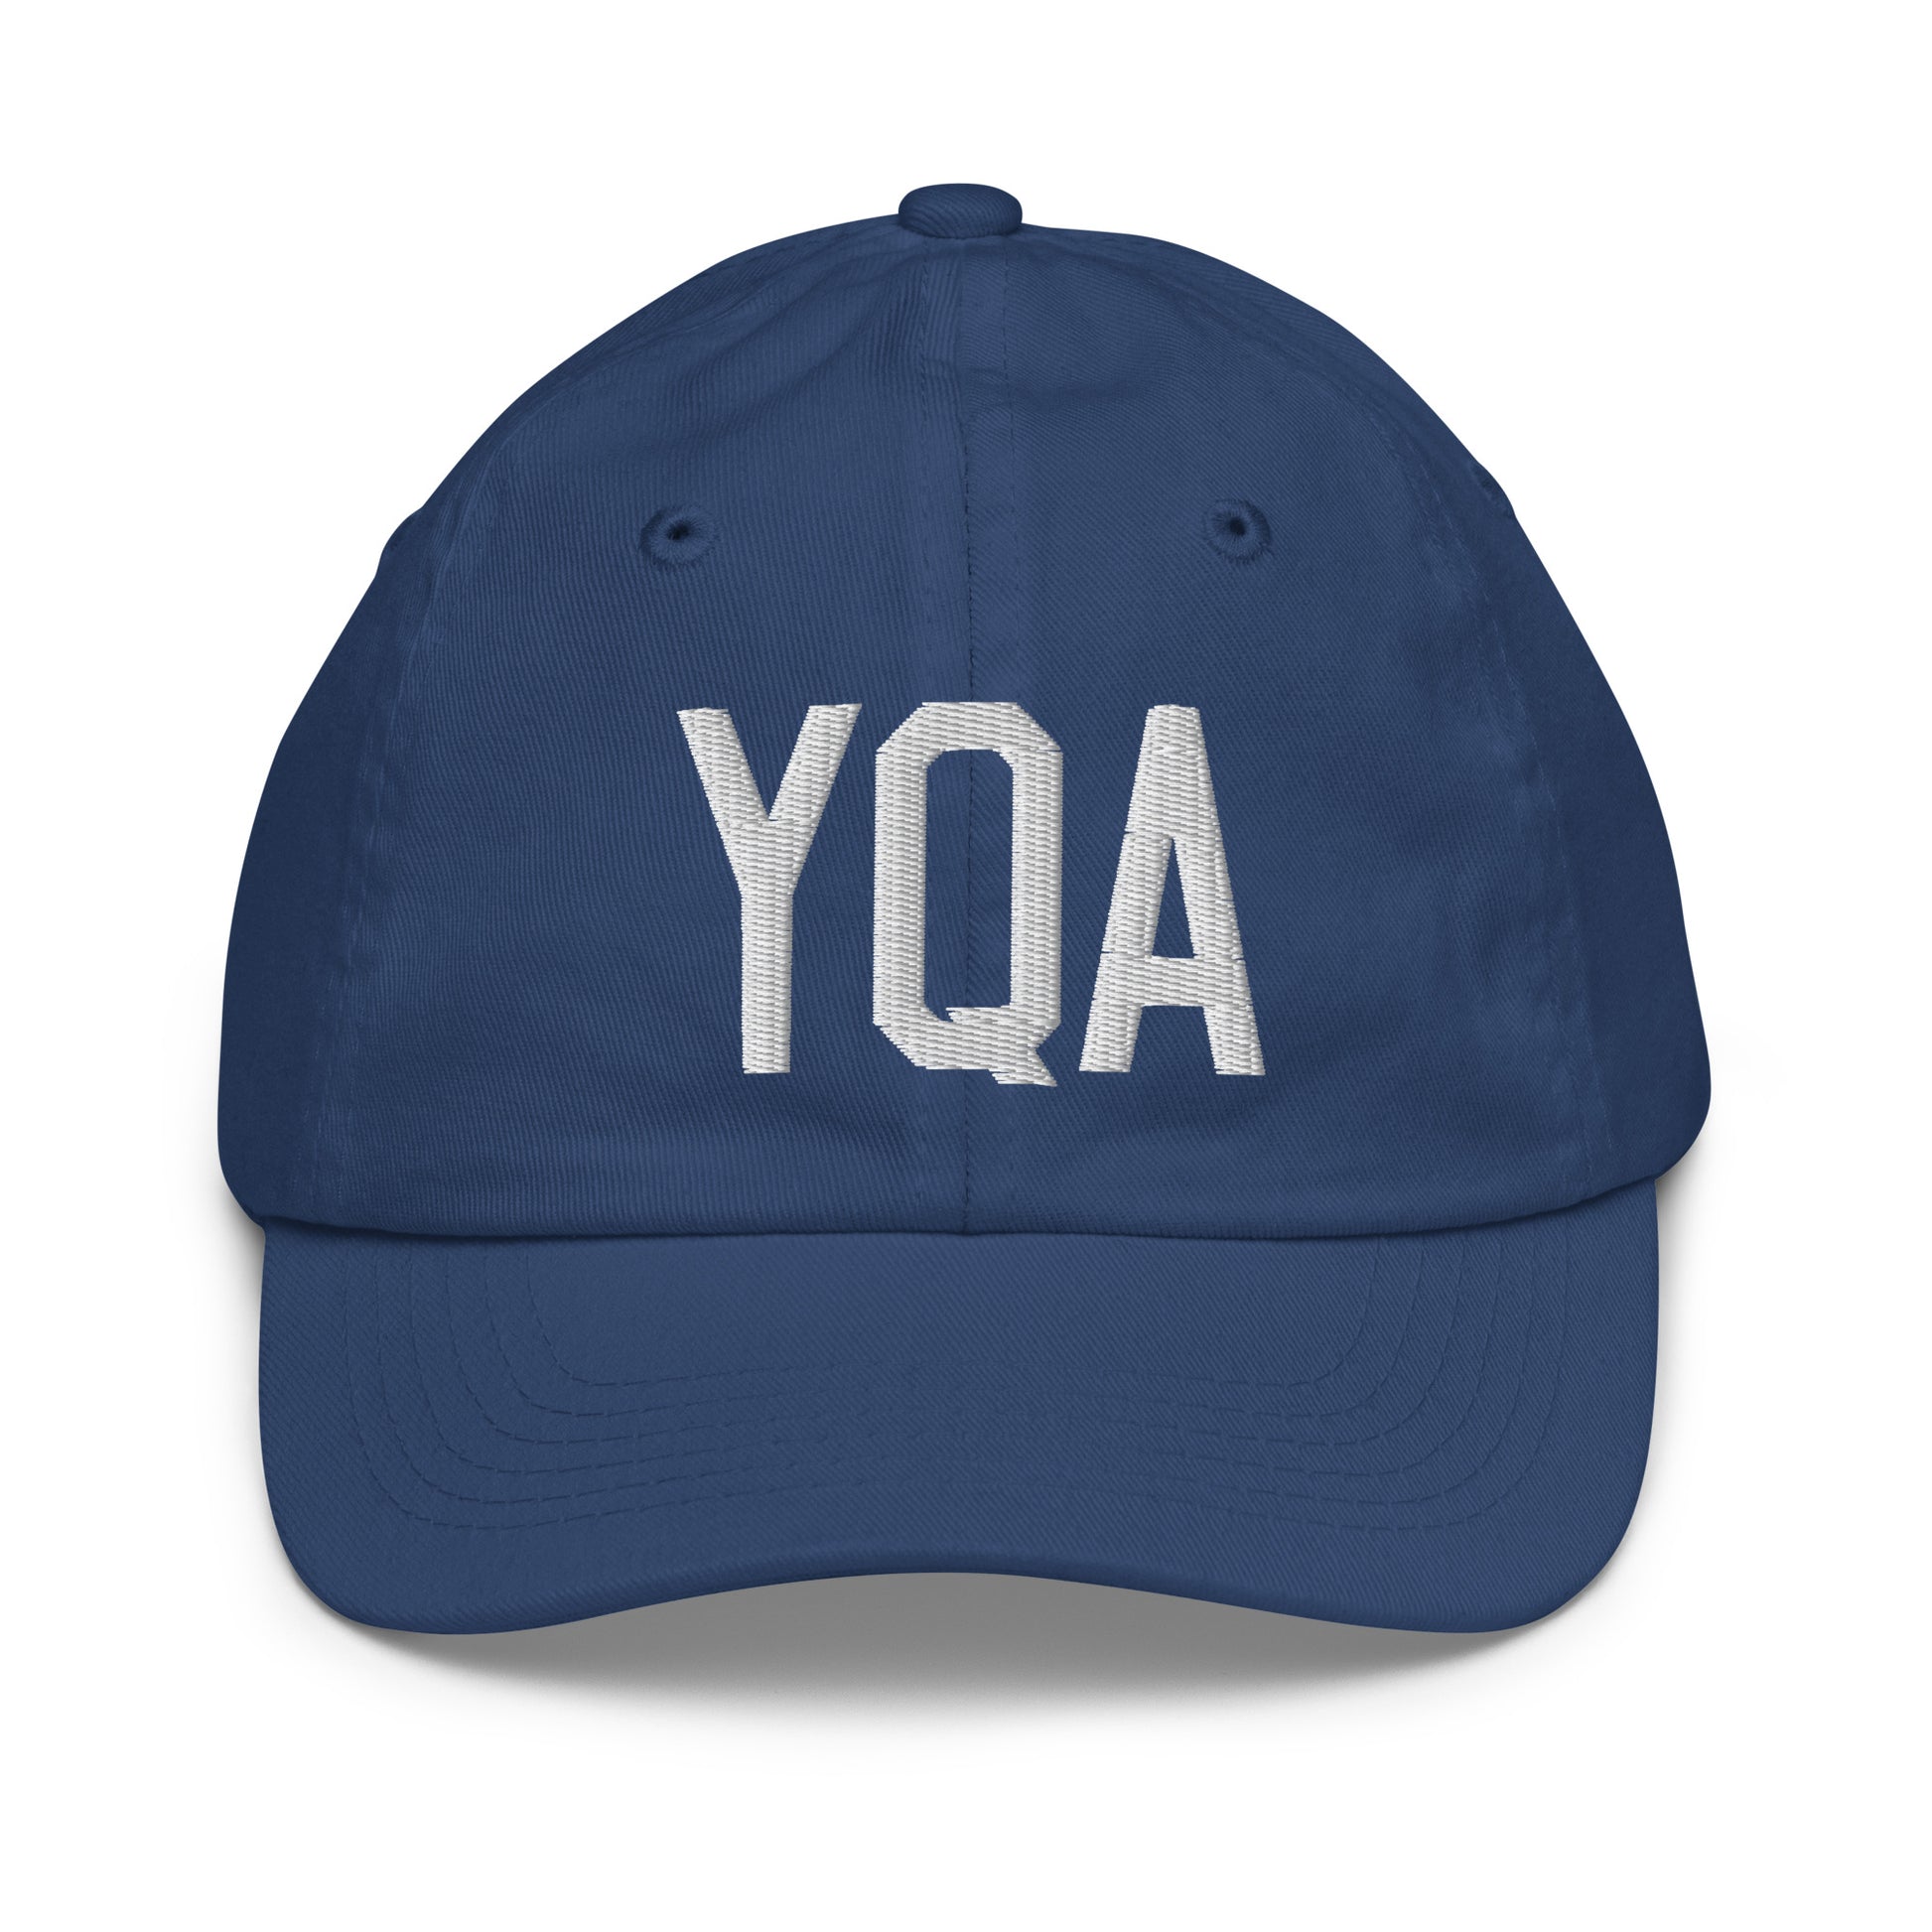 Airport Code Kid's Baseball Cap - White • YQA Muskoka • YHM Designs - Image 20